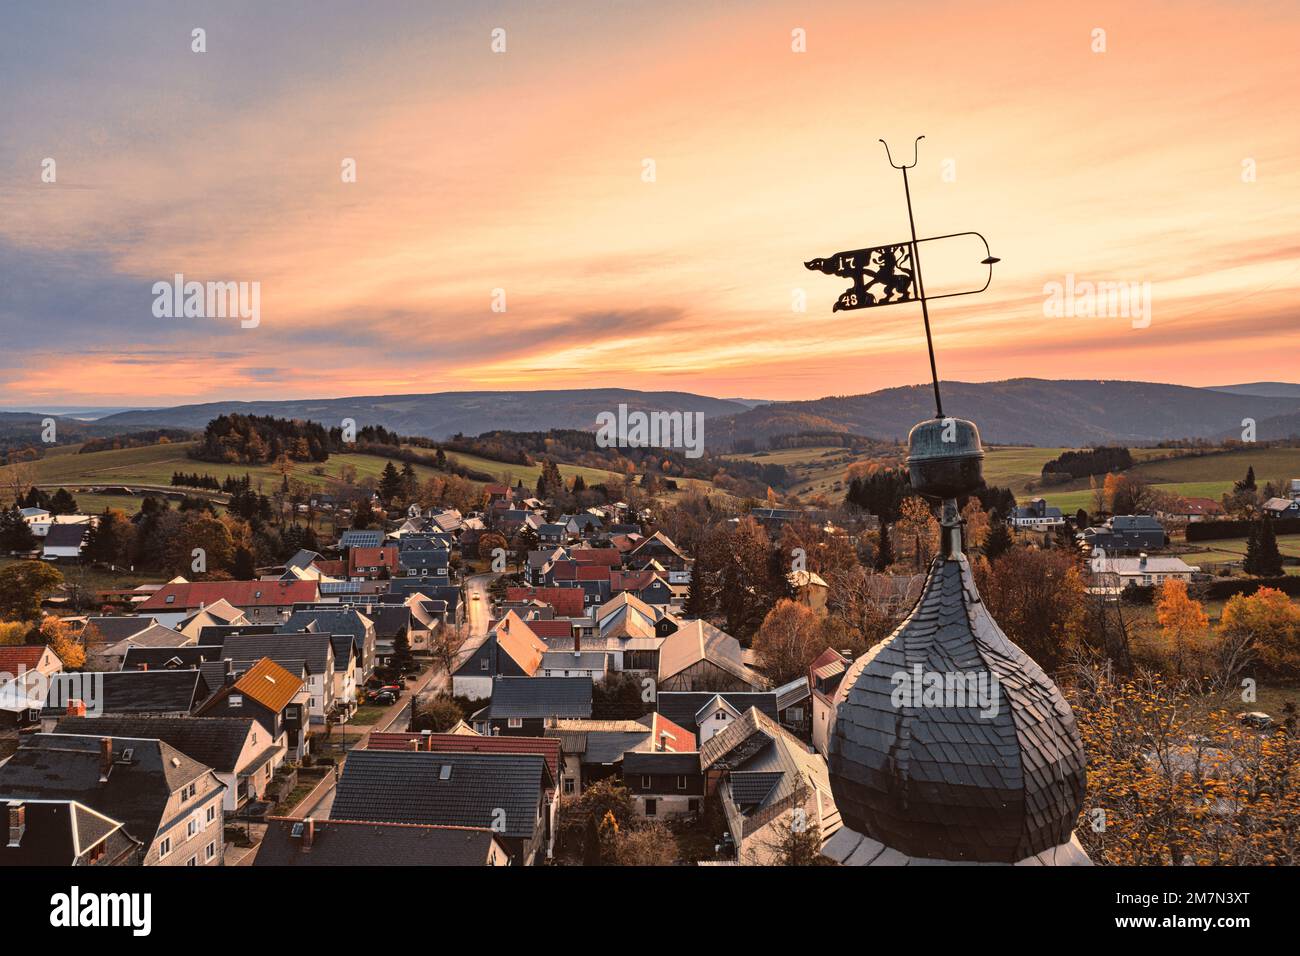 Germania, Turingia, Königsee, Oberhain, banderuola, guglia della chiesa, villaggio, alba, panoramica, retroilluminazione Foto Stock